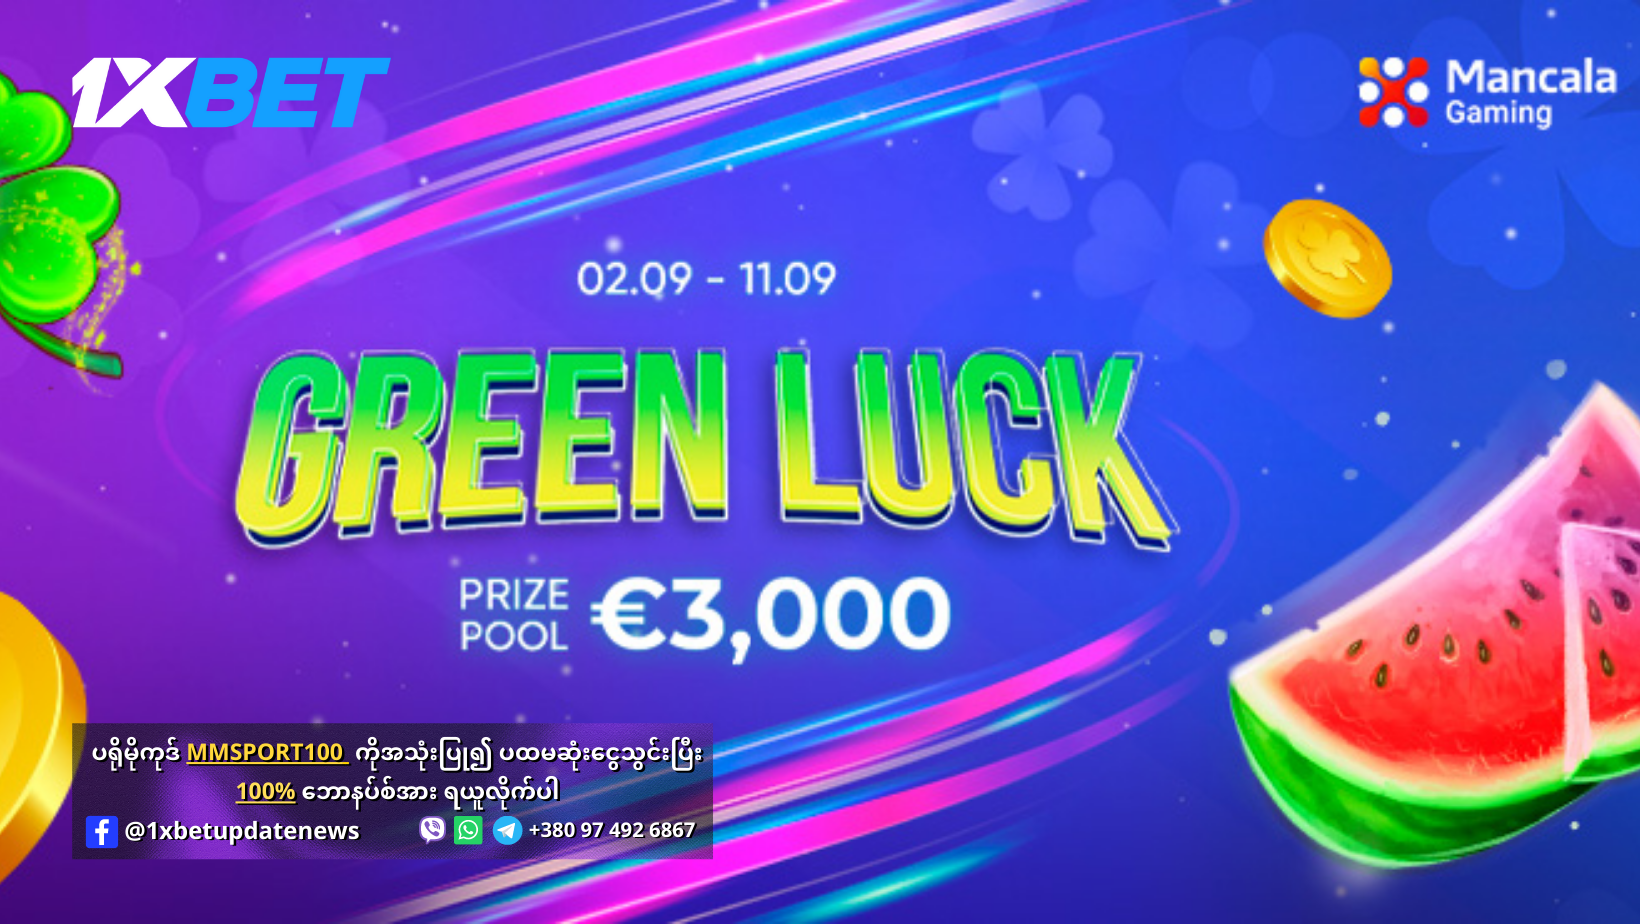 Green Luck Offer 1xBet